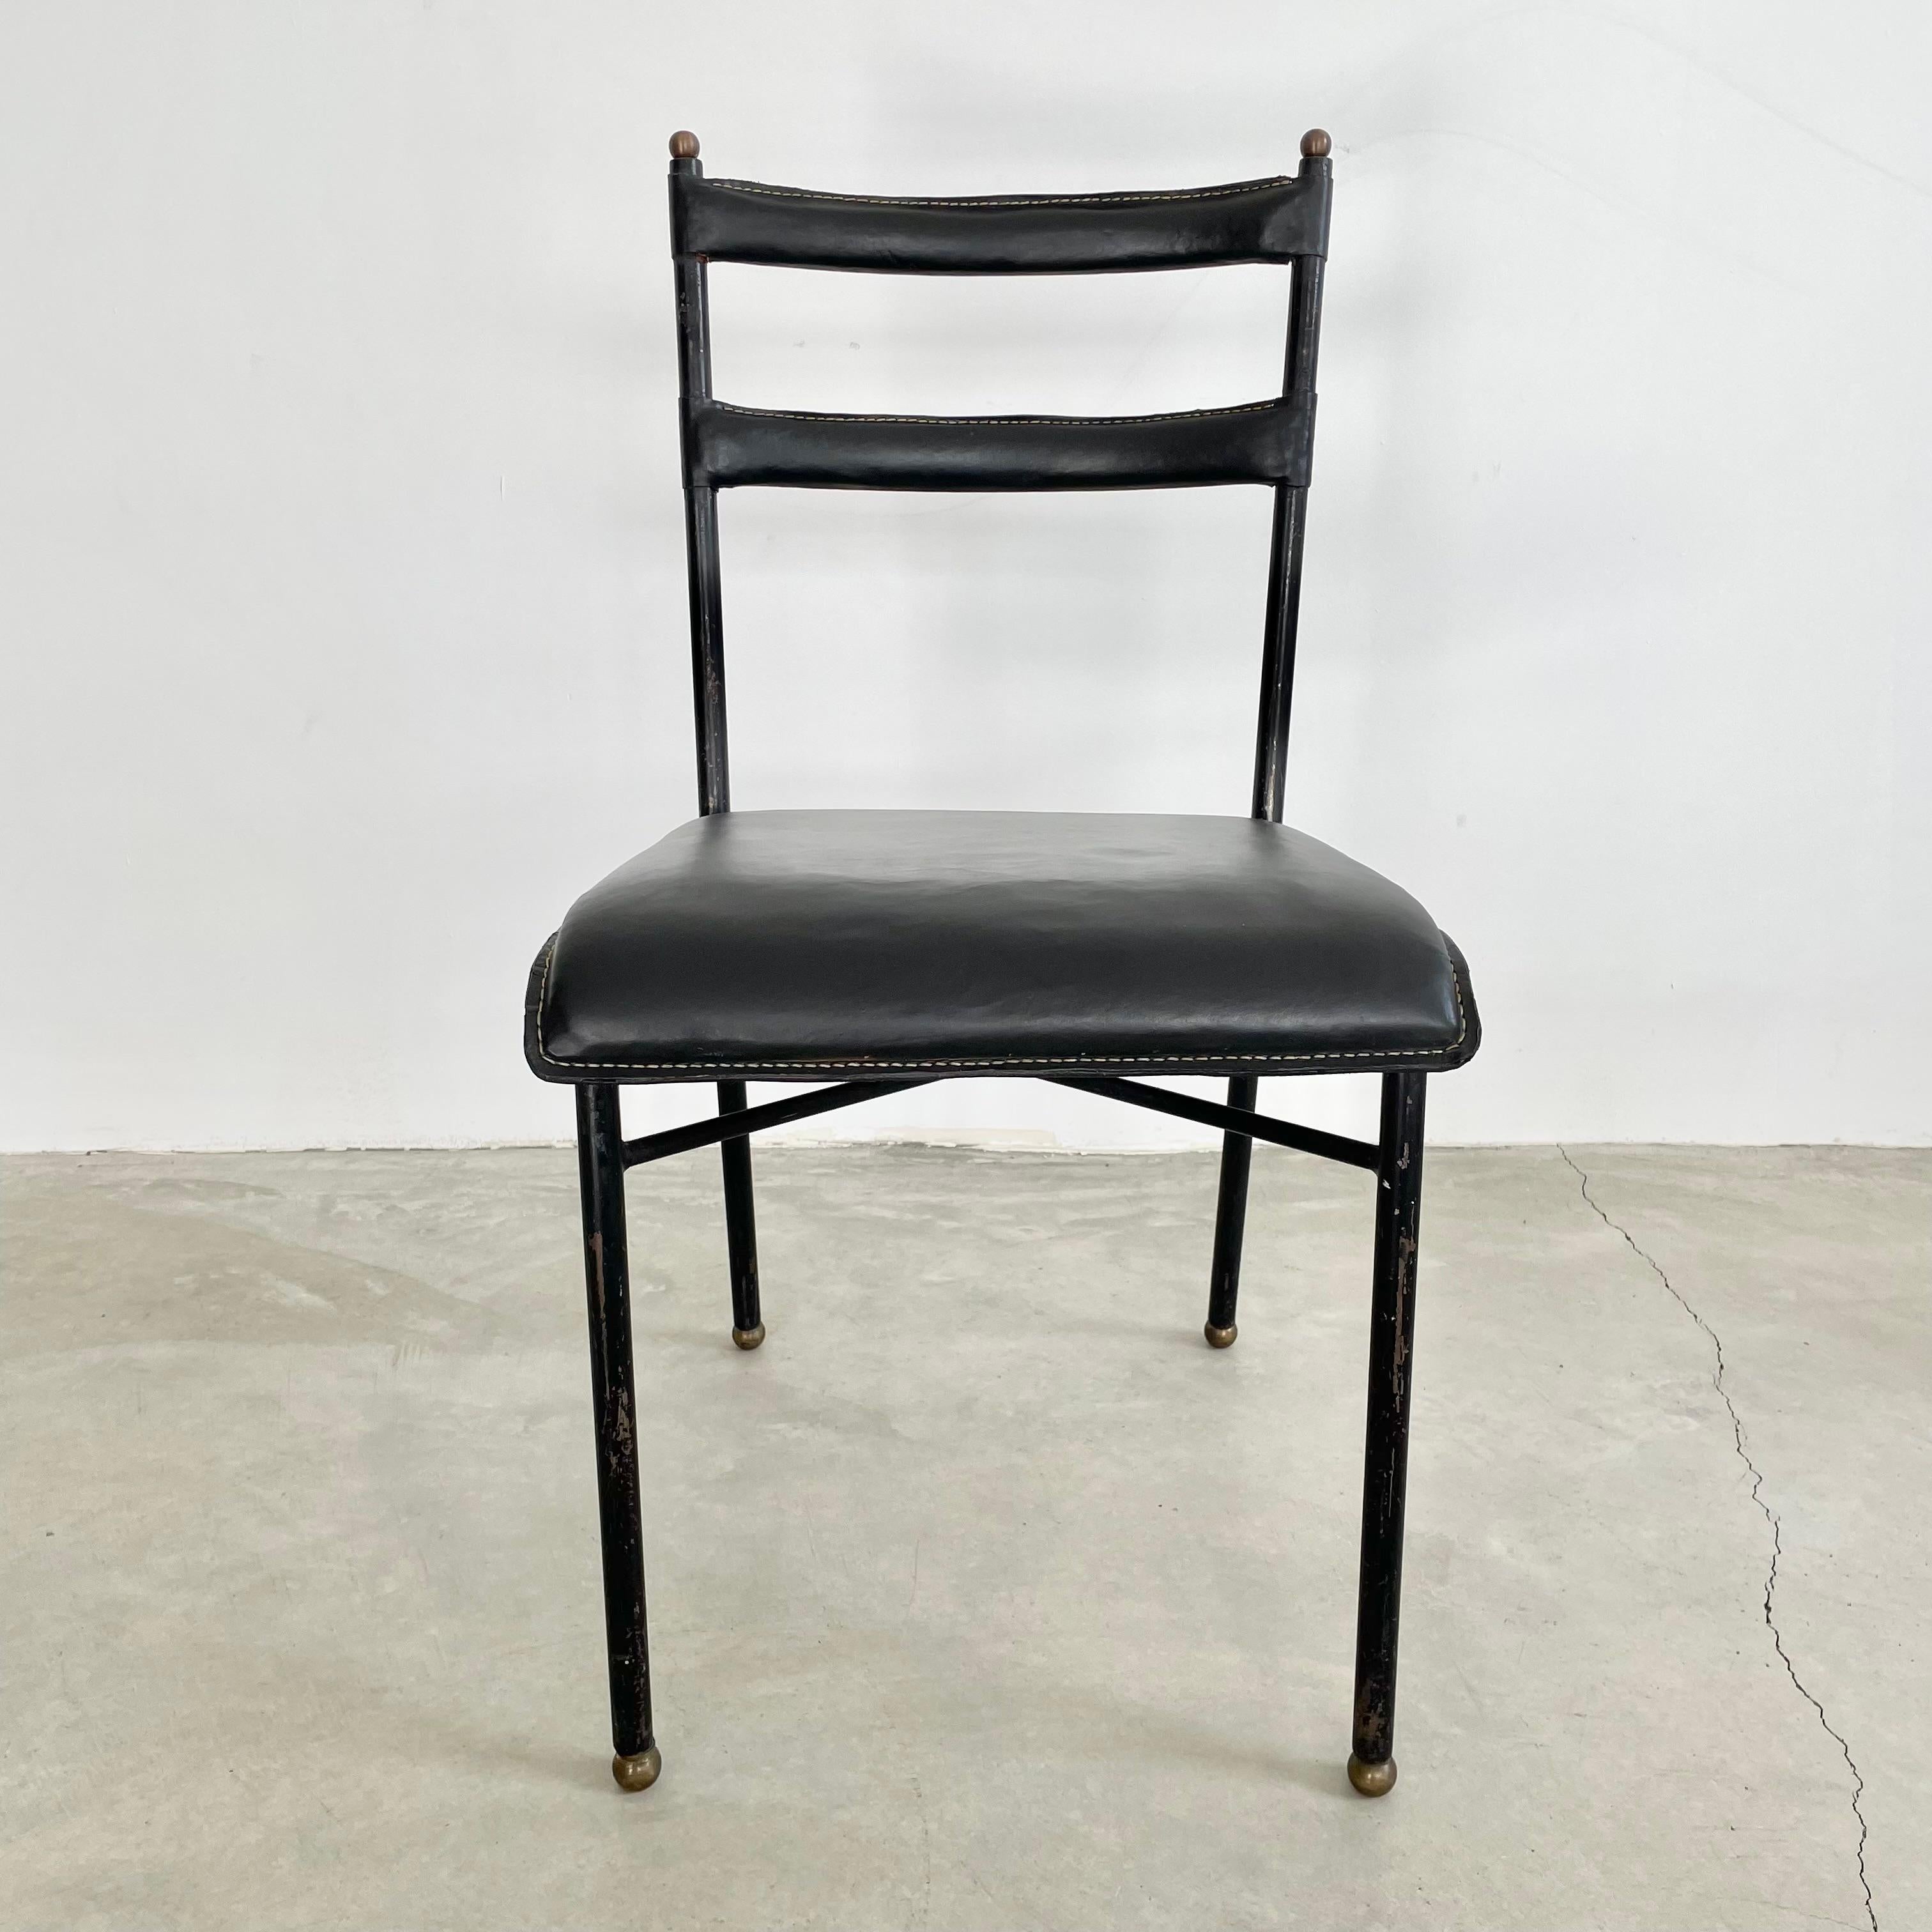 Atemberaubender schwarzer Lederstuhl des französischen Designers Jacques Adnet. Gestell aus schwarzem Metall, die Beine enden in Kugelfüßen aus Messing. Messingkugeln zieren auch den oberen Teil des Rahmens. Sitz und Rückenlehnen aus dickem Leder,